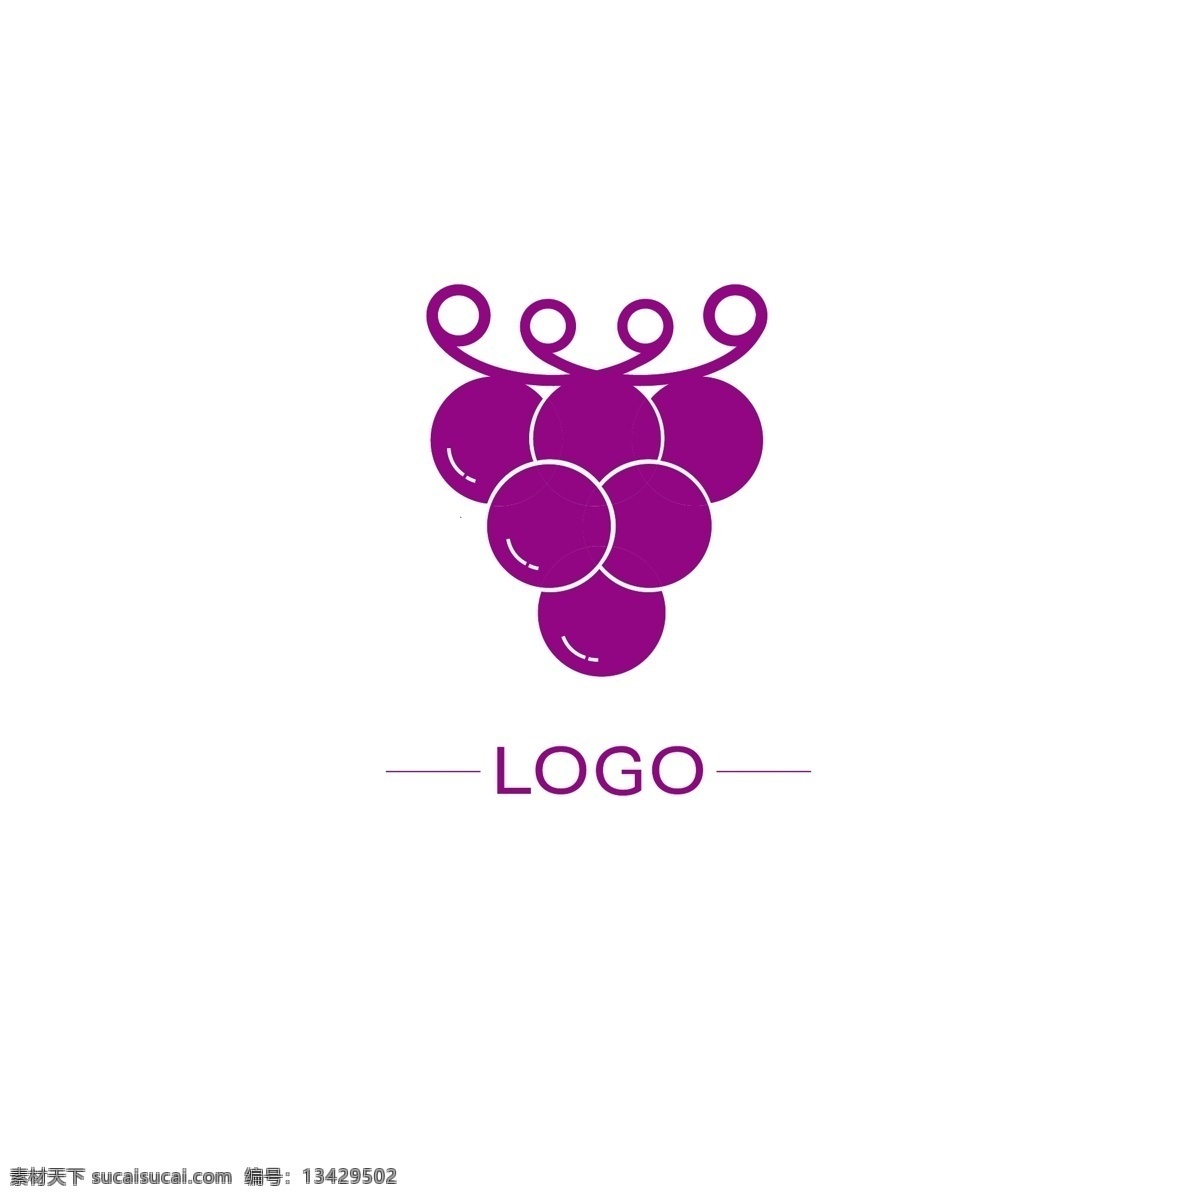 logo 原创 品牌 标识设计 葡萄 紫 企业 标识 简约 ai矢量 通用